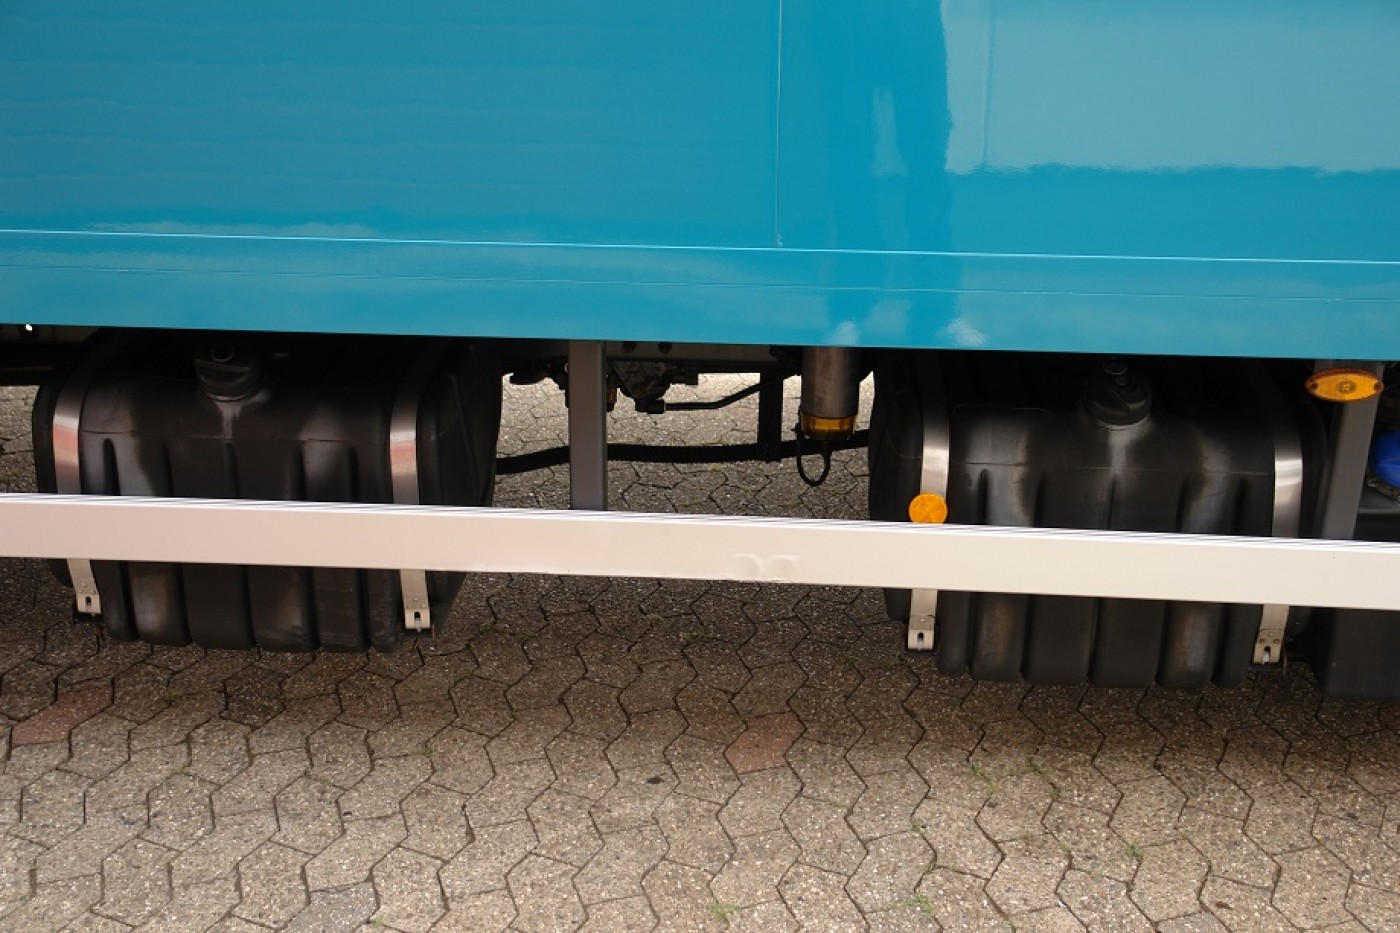 Iveco ML80E22 Doppelkabine Schlafkabine Koffer Luftfederung Ladebordwand 1000 kg Klima Standheizung EURO 5!